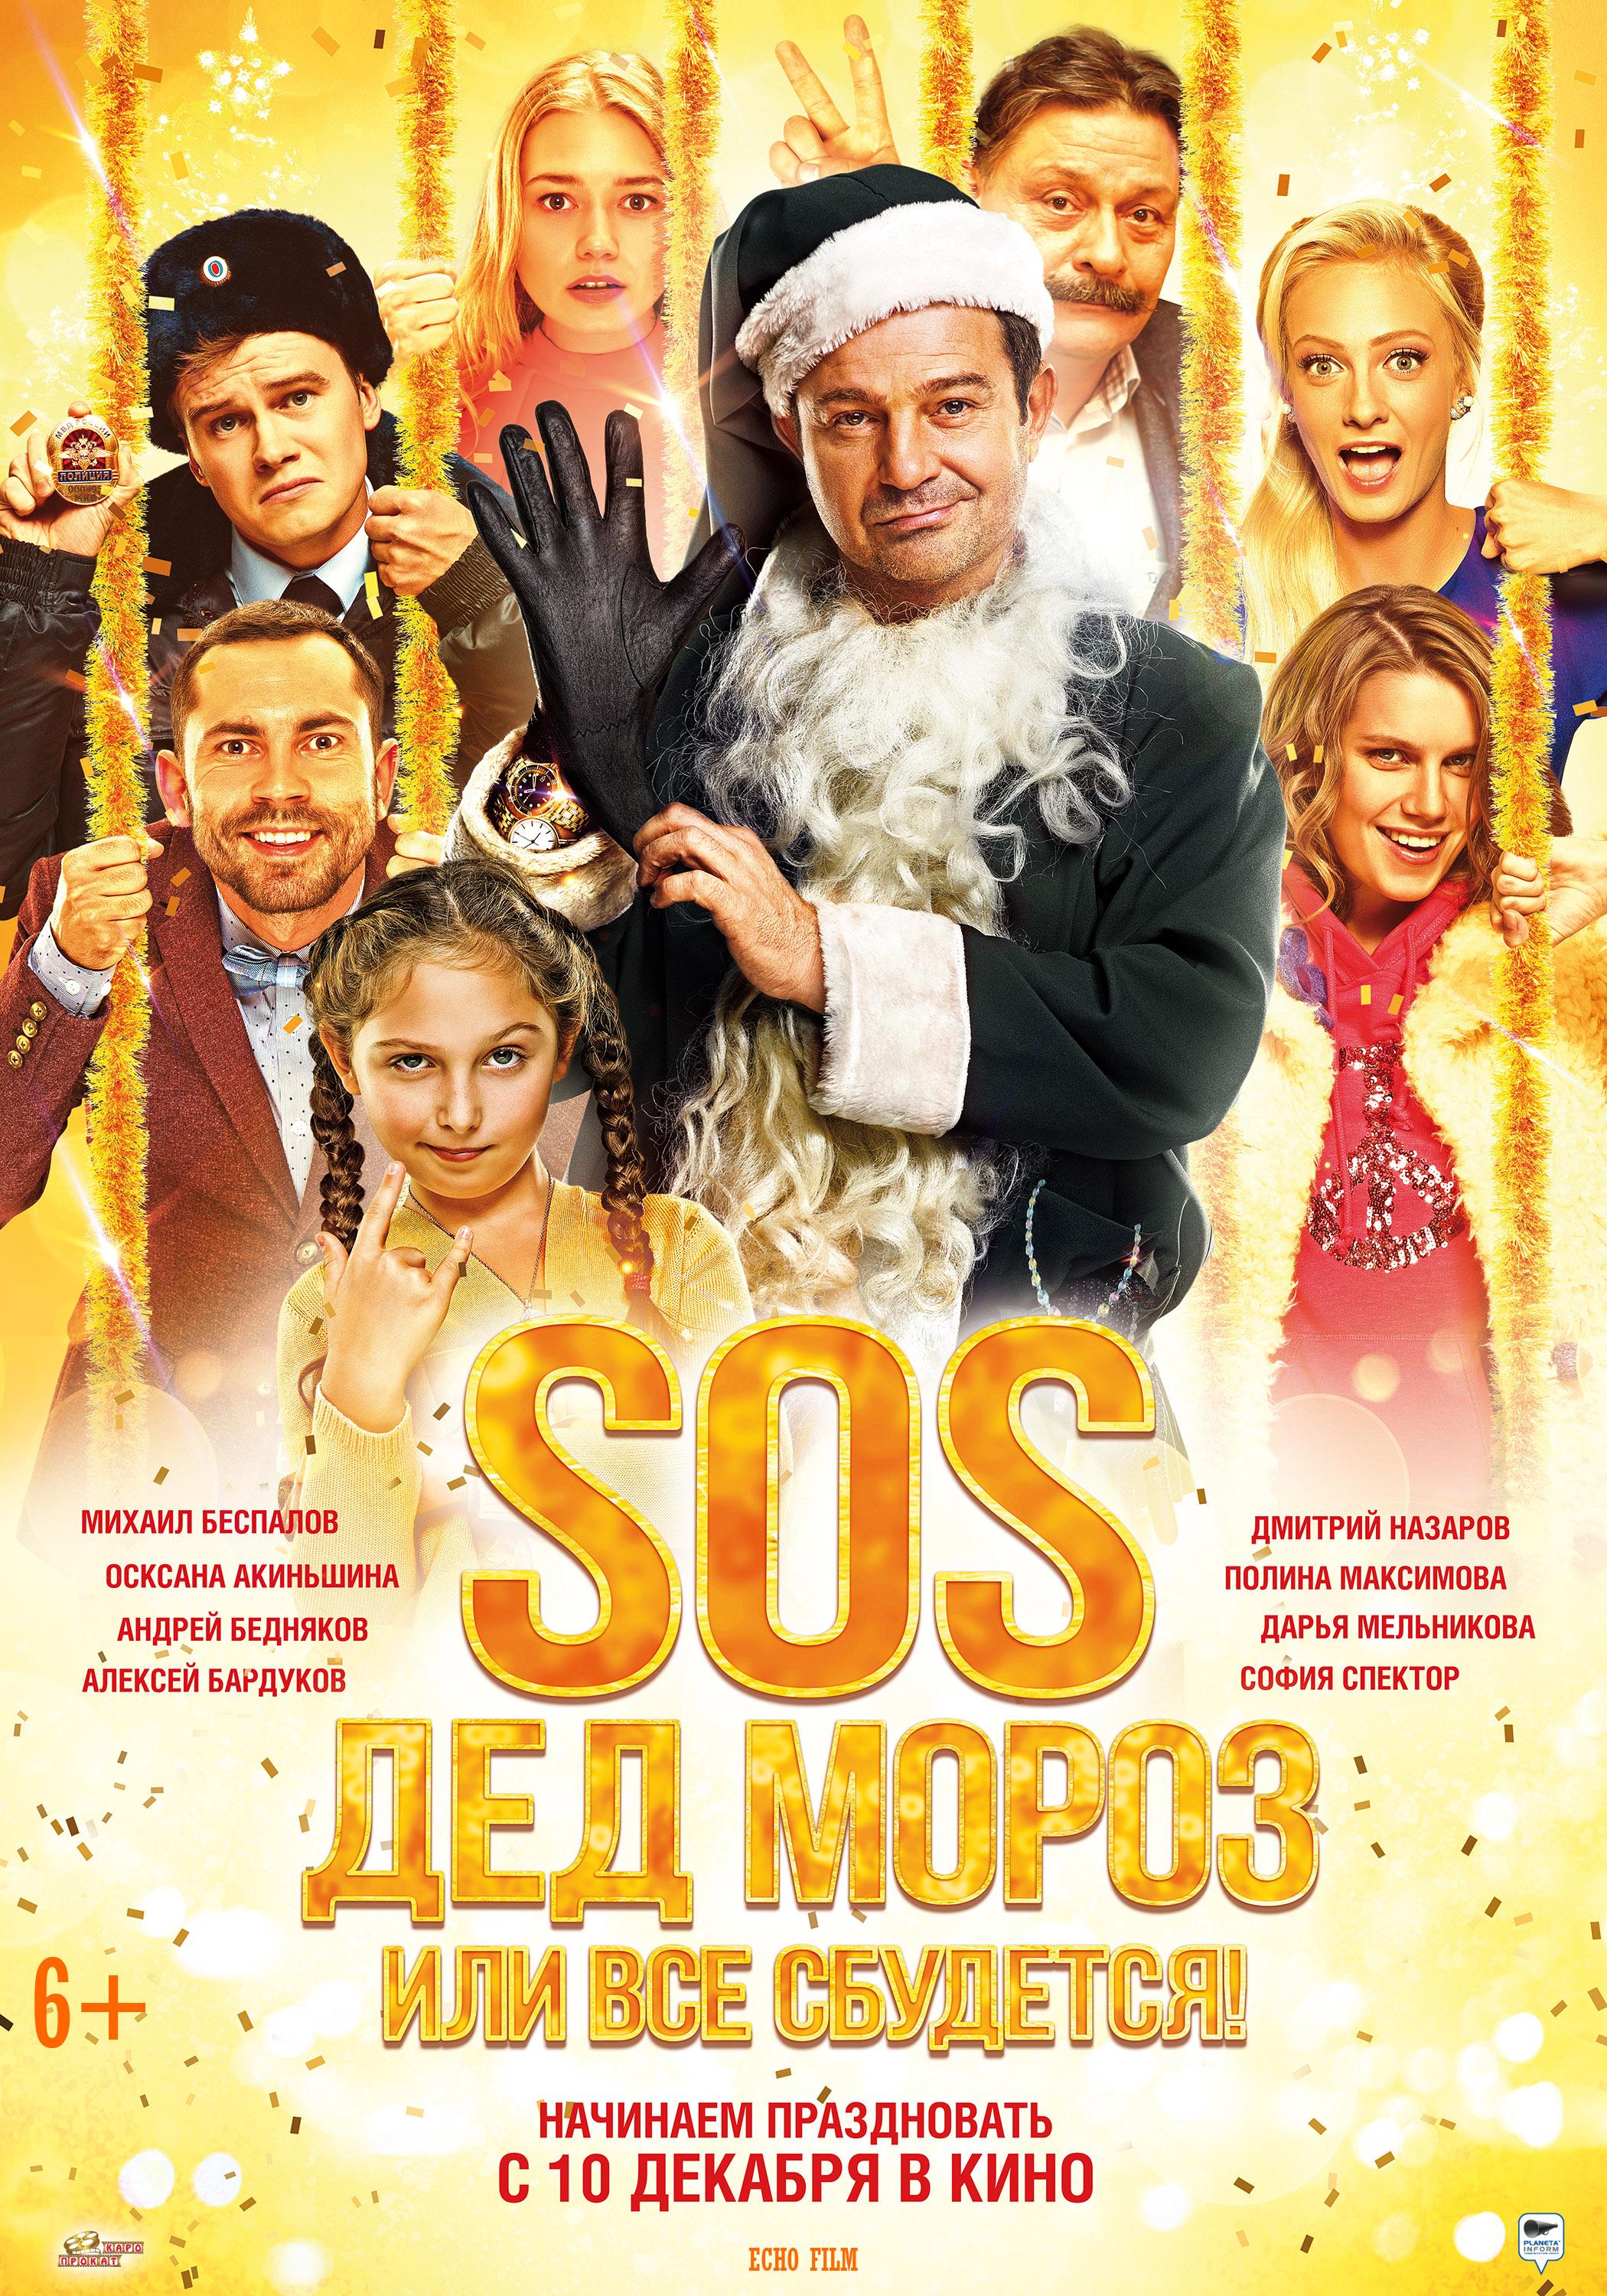 Семейная комедия россия. SOS, дед Мороз, или всё сбудется! (2015) Постер. Новогодняя комедия для всей семьи.